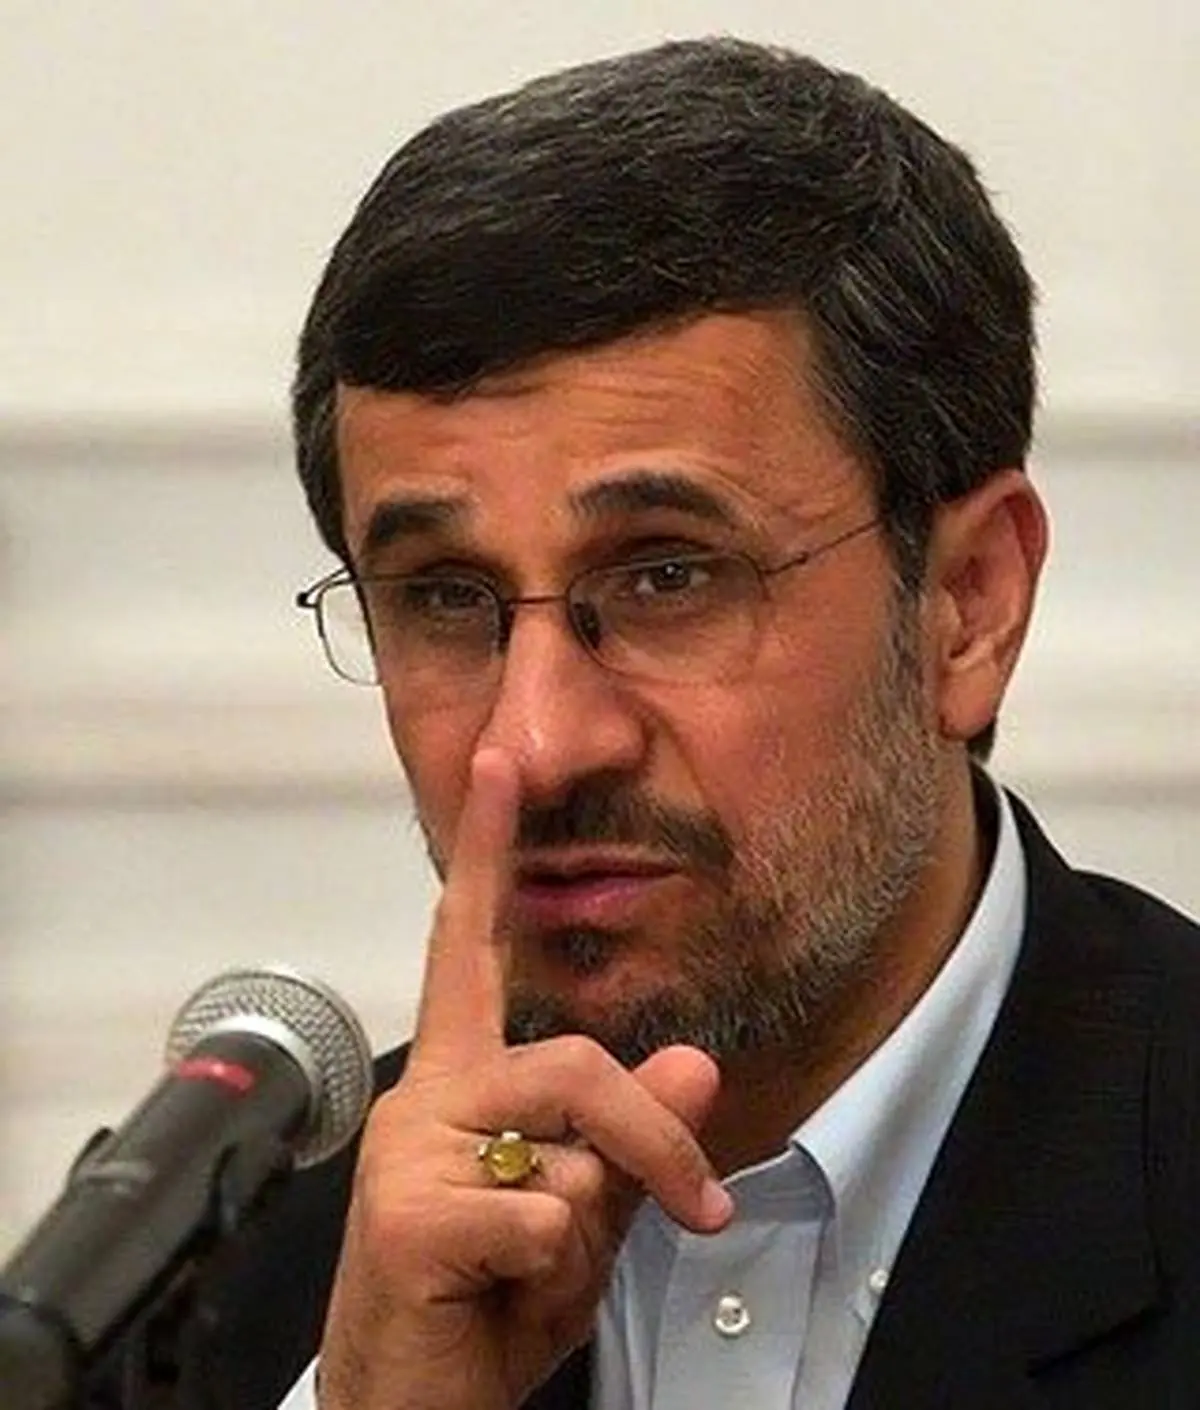 پای احمدی نژاد،کی به دادگاه باز می شود؟